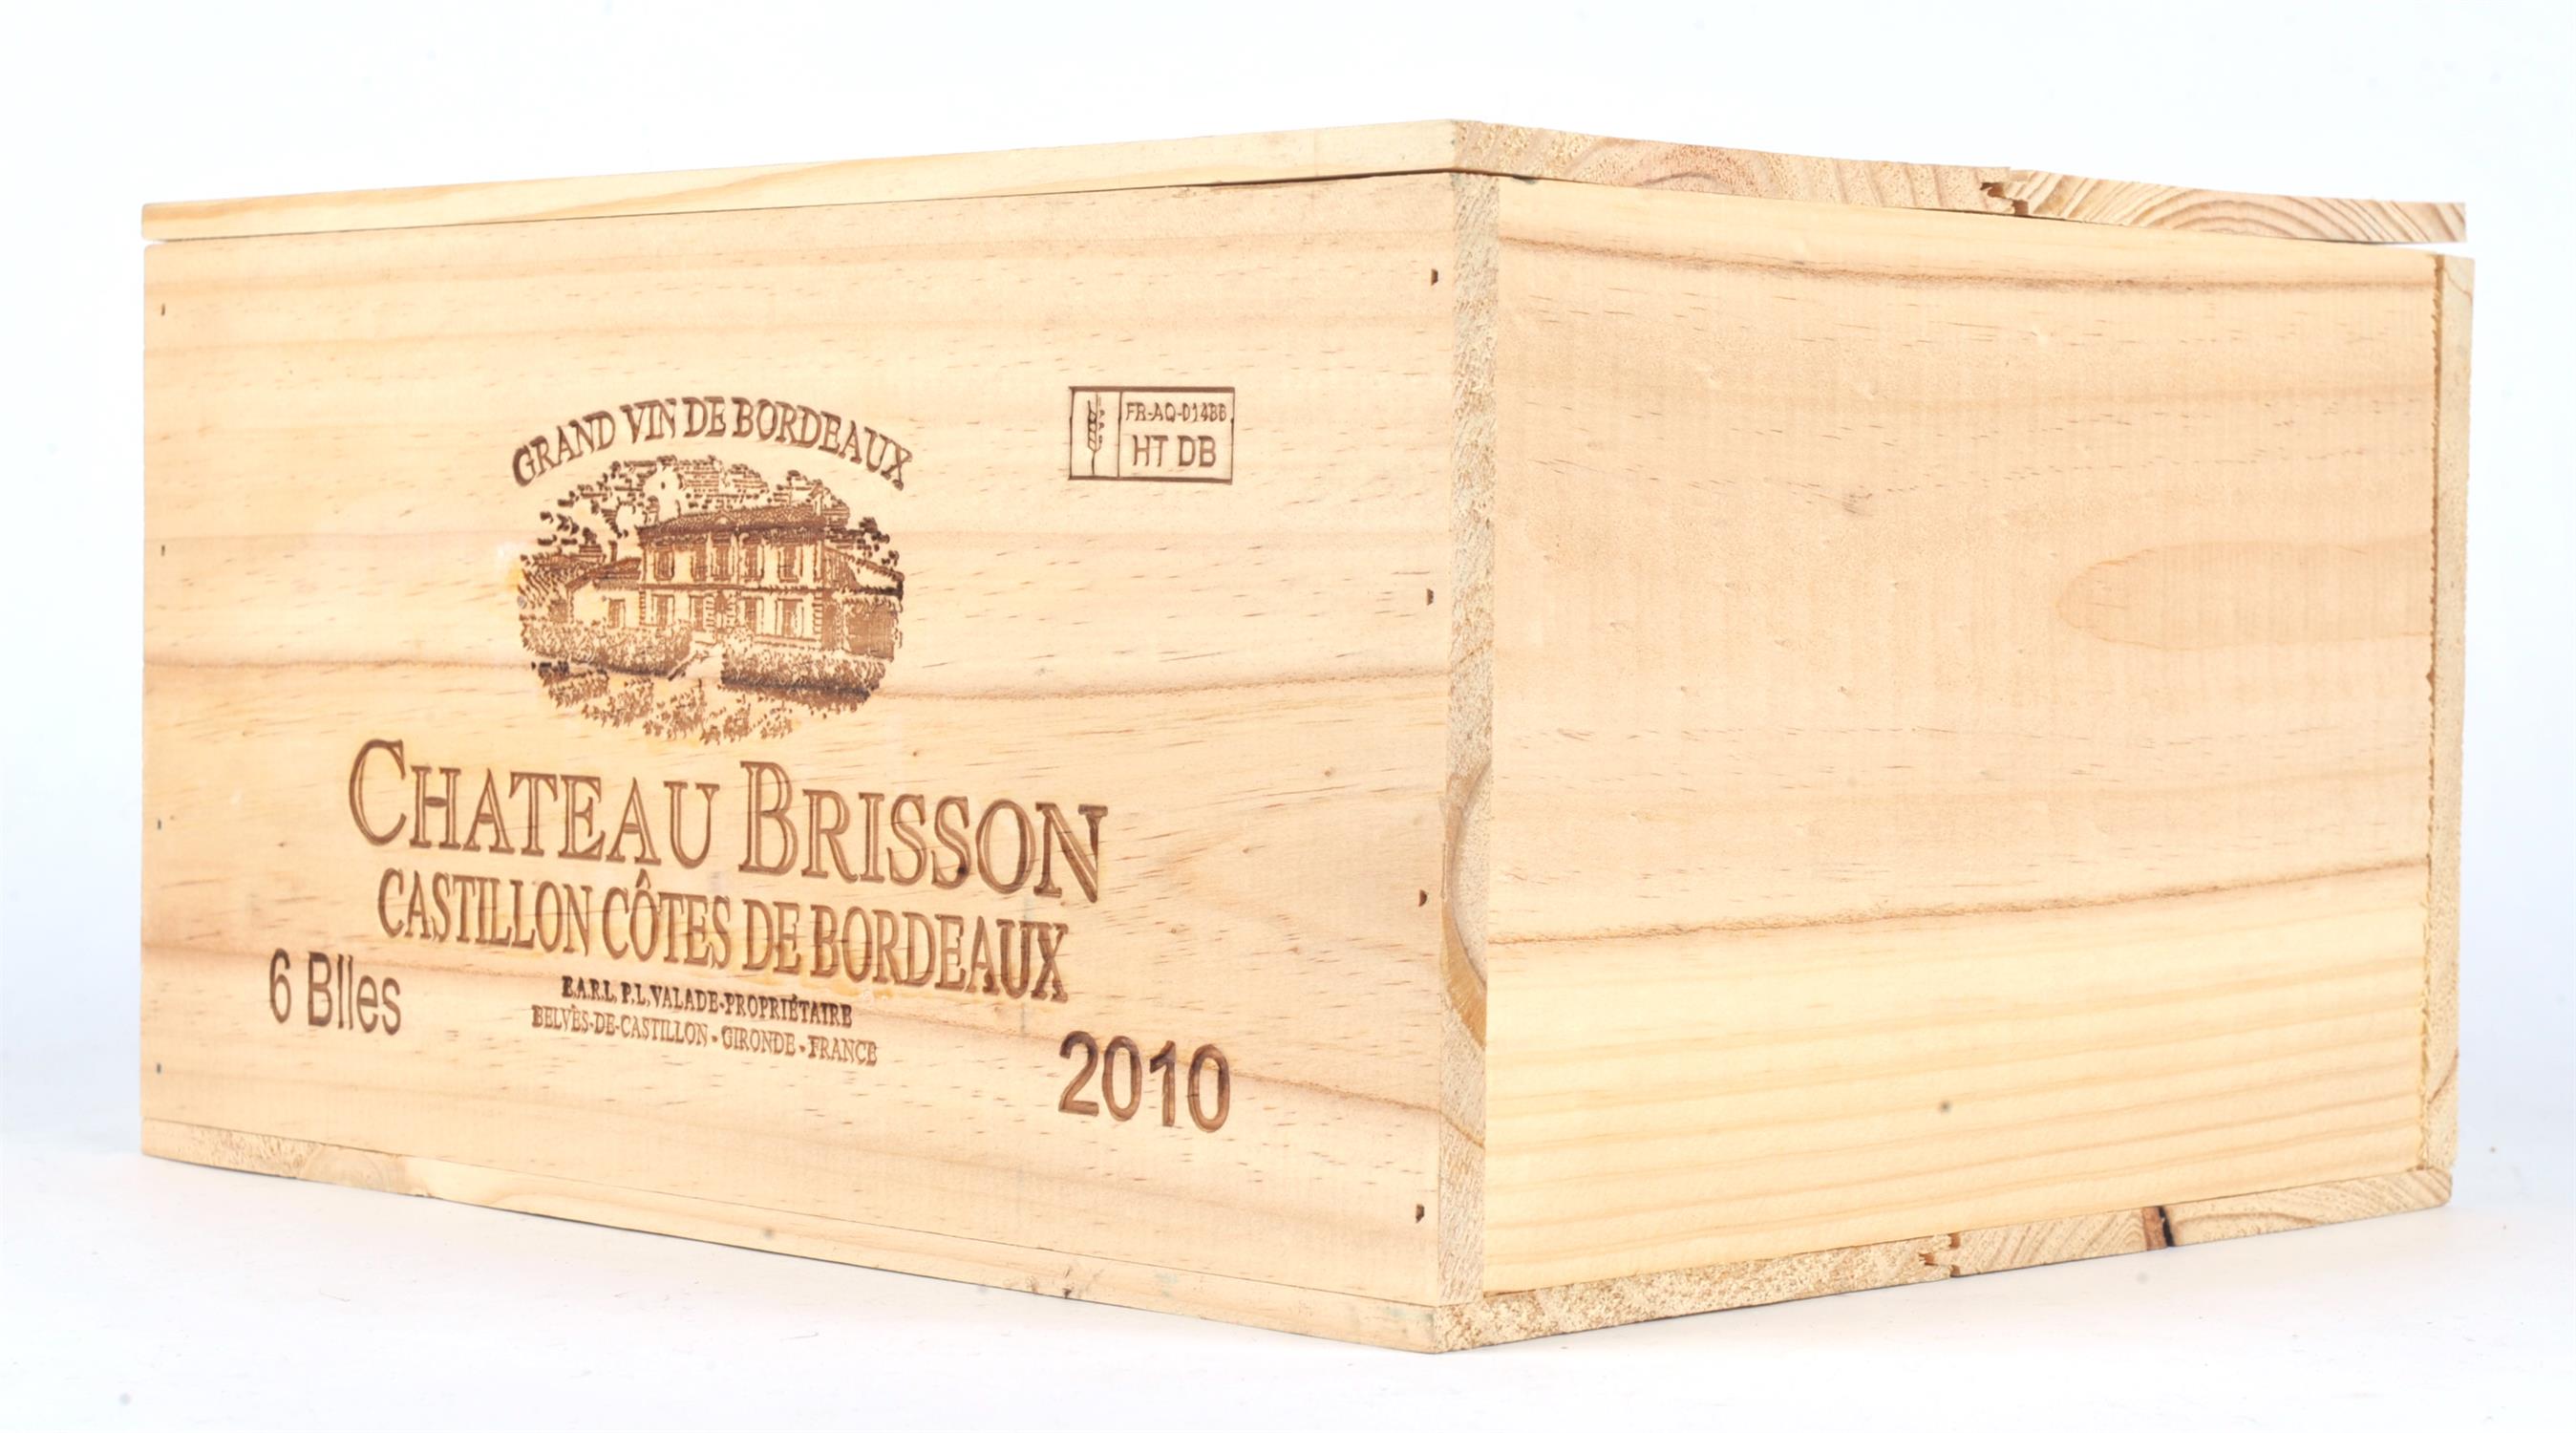 Bordeaux wines, Chateau Brisson, Castillon Cotes de Bordeaux 2010, six bottles, in OWC (6) Note: